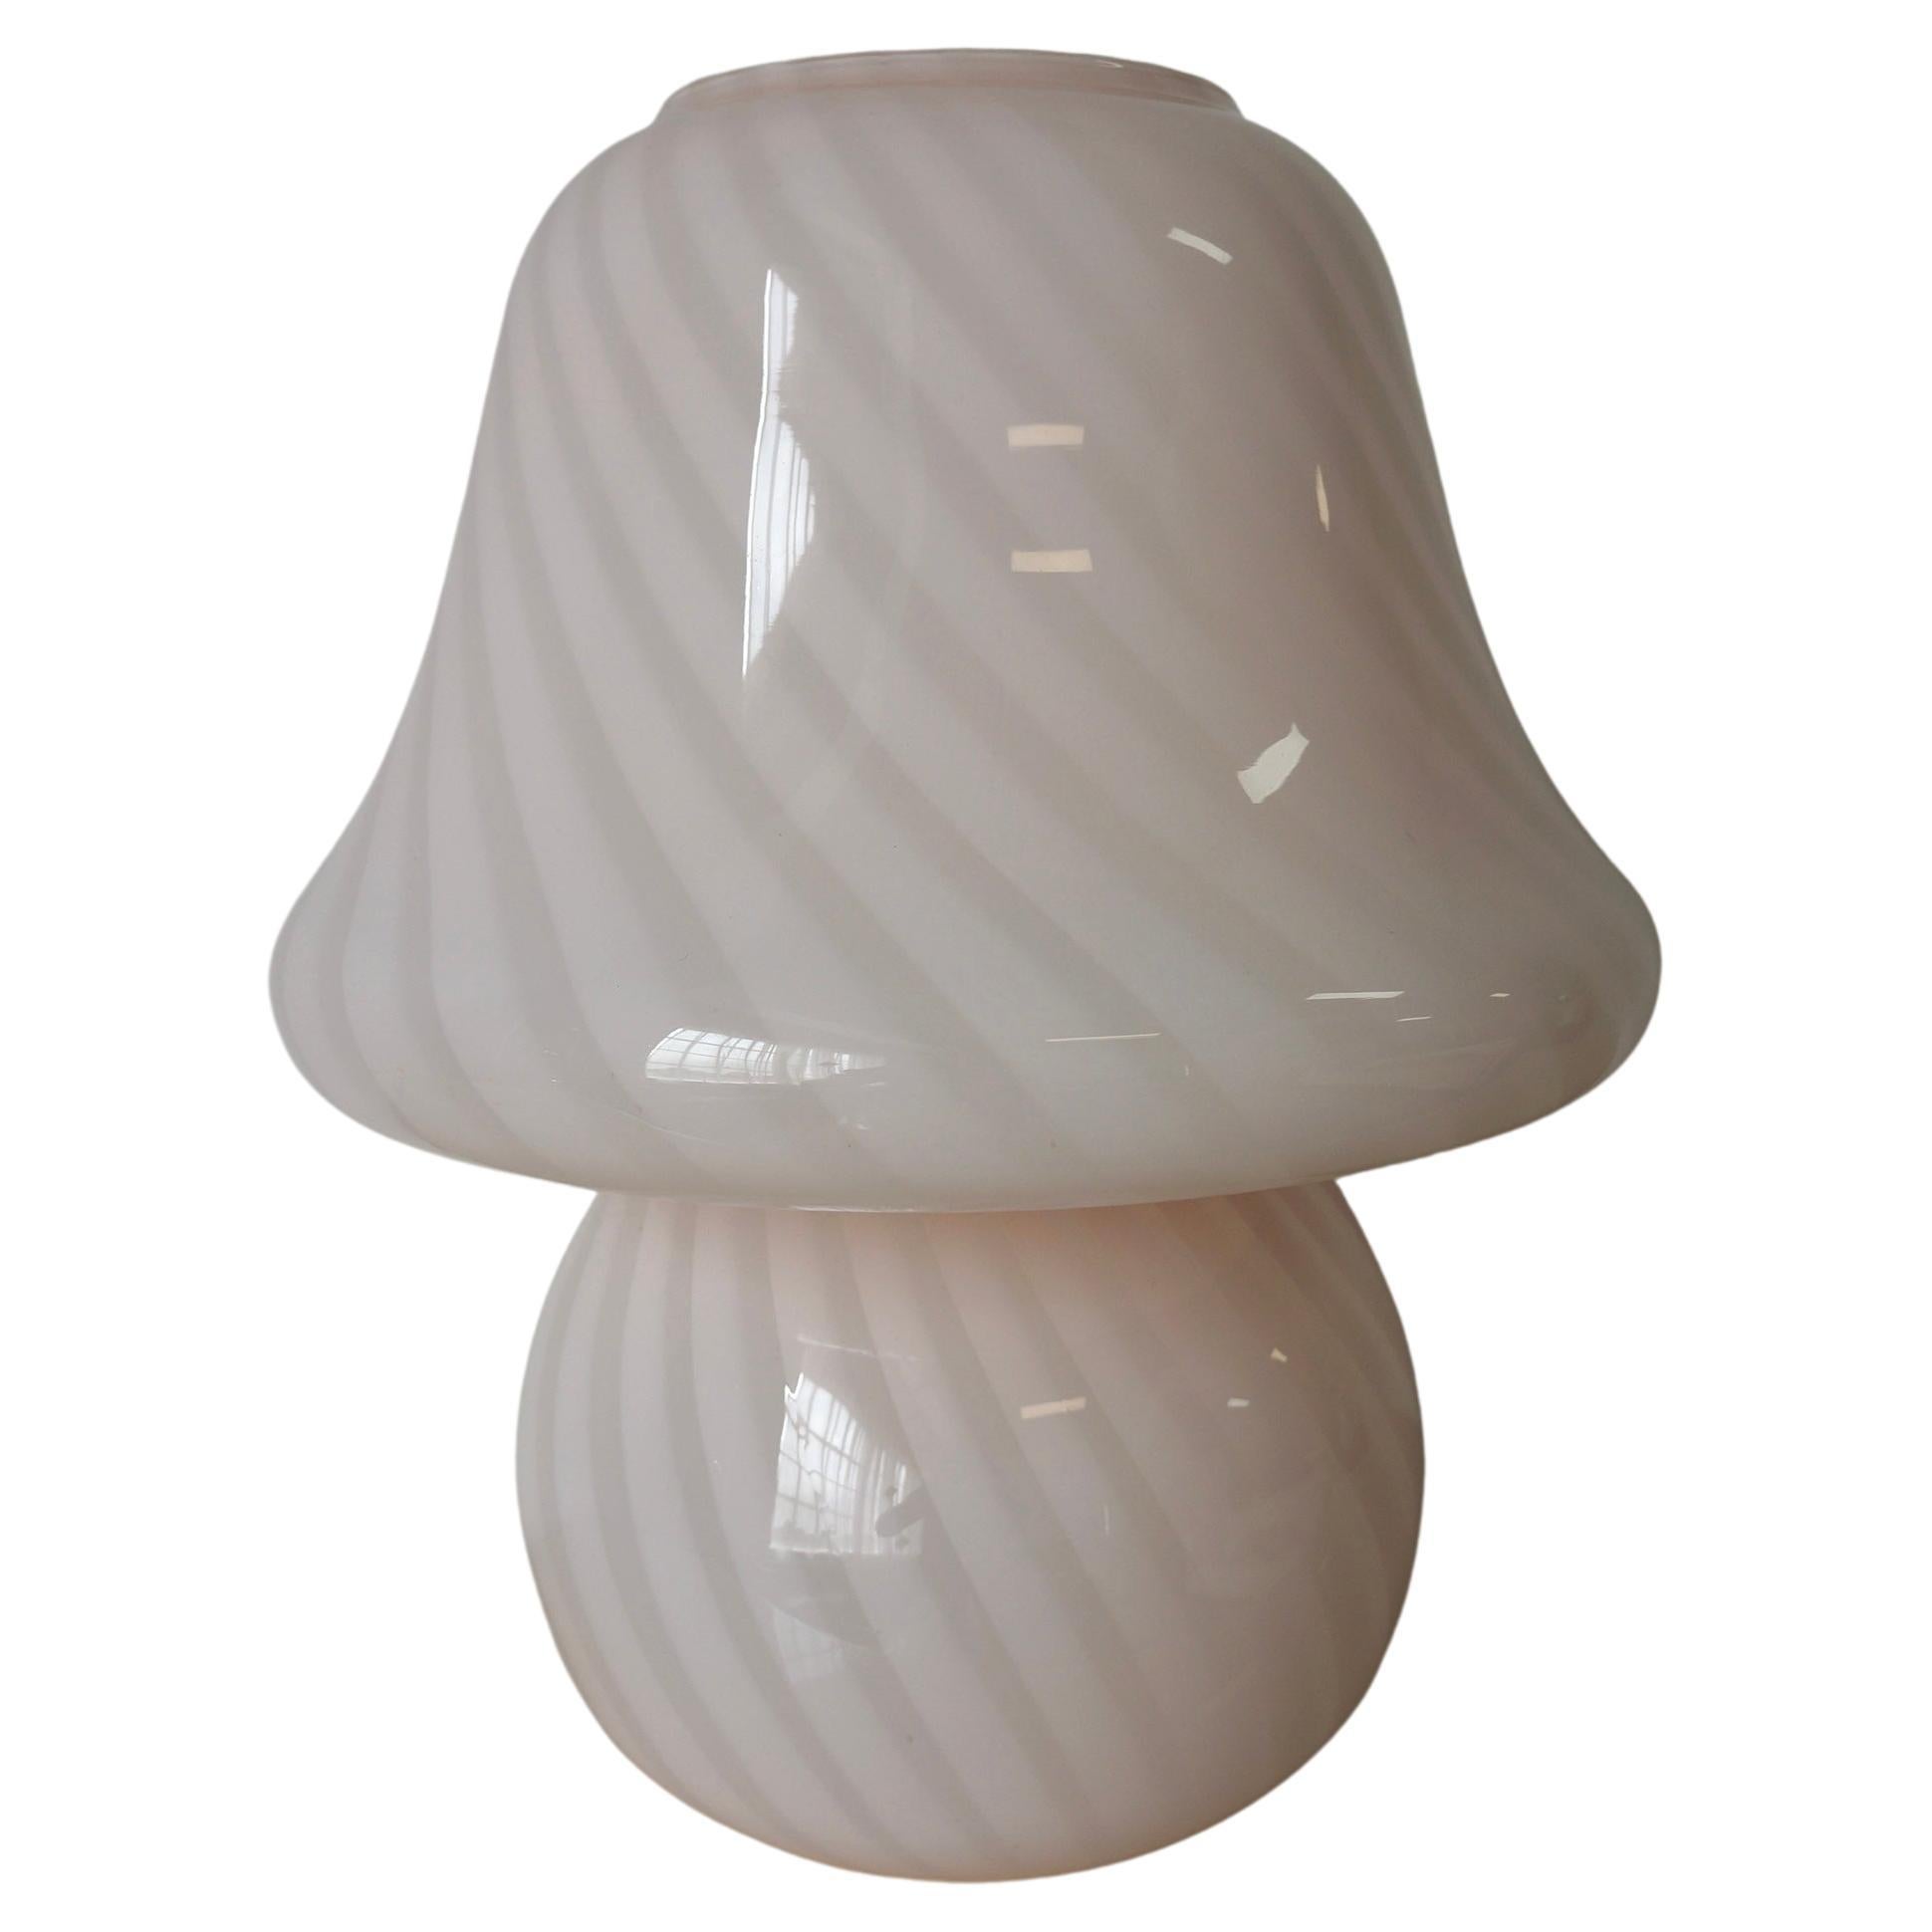 Superbe lampe champignon en verre d'art de Murano avec une forme évasée au sommet. Il a été fabriqué à l'origine sur l'île de Murano, en Italie, dans les années 1970, par des artisans verriers de Murano. La forme et la taille de ce champignon sont